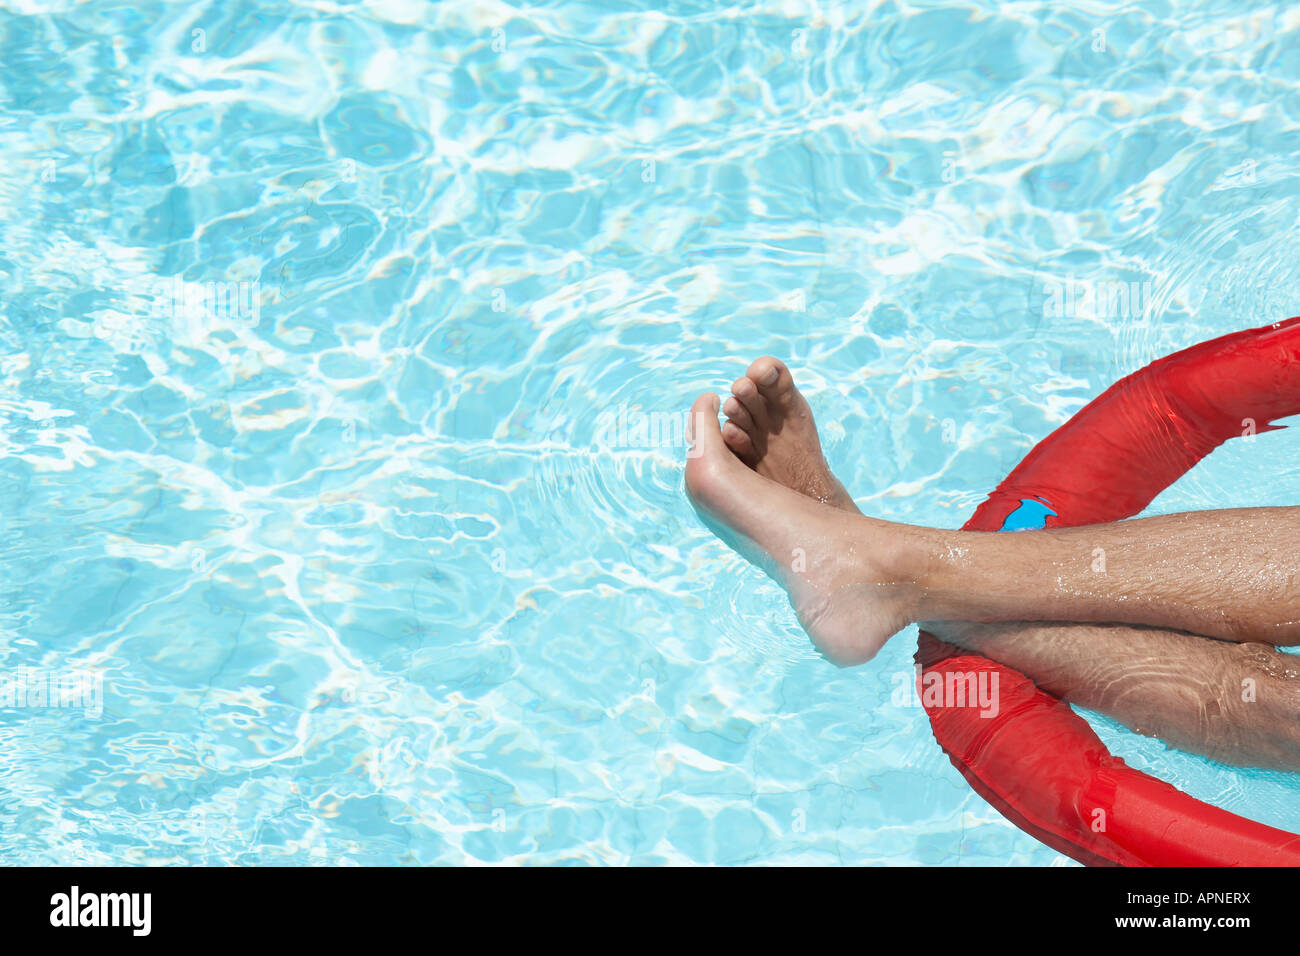 Les jambes de l'homme sur le matelas gonflable dans la piscine Banque D'Images